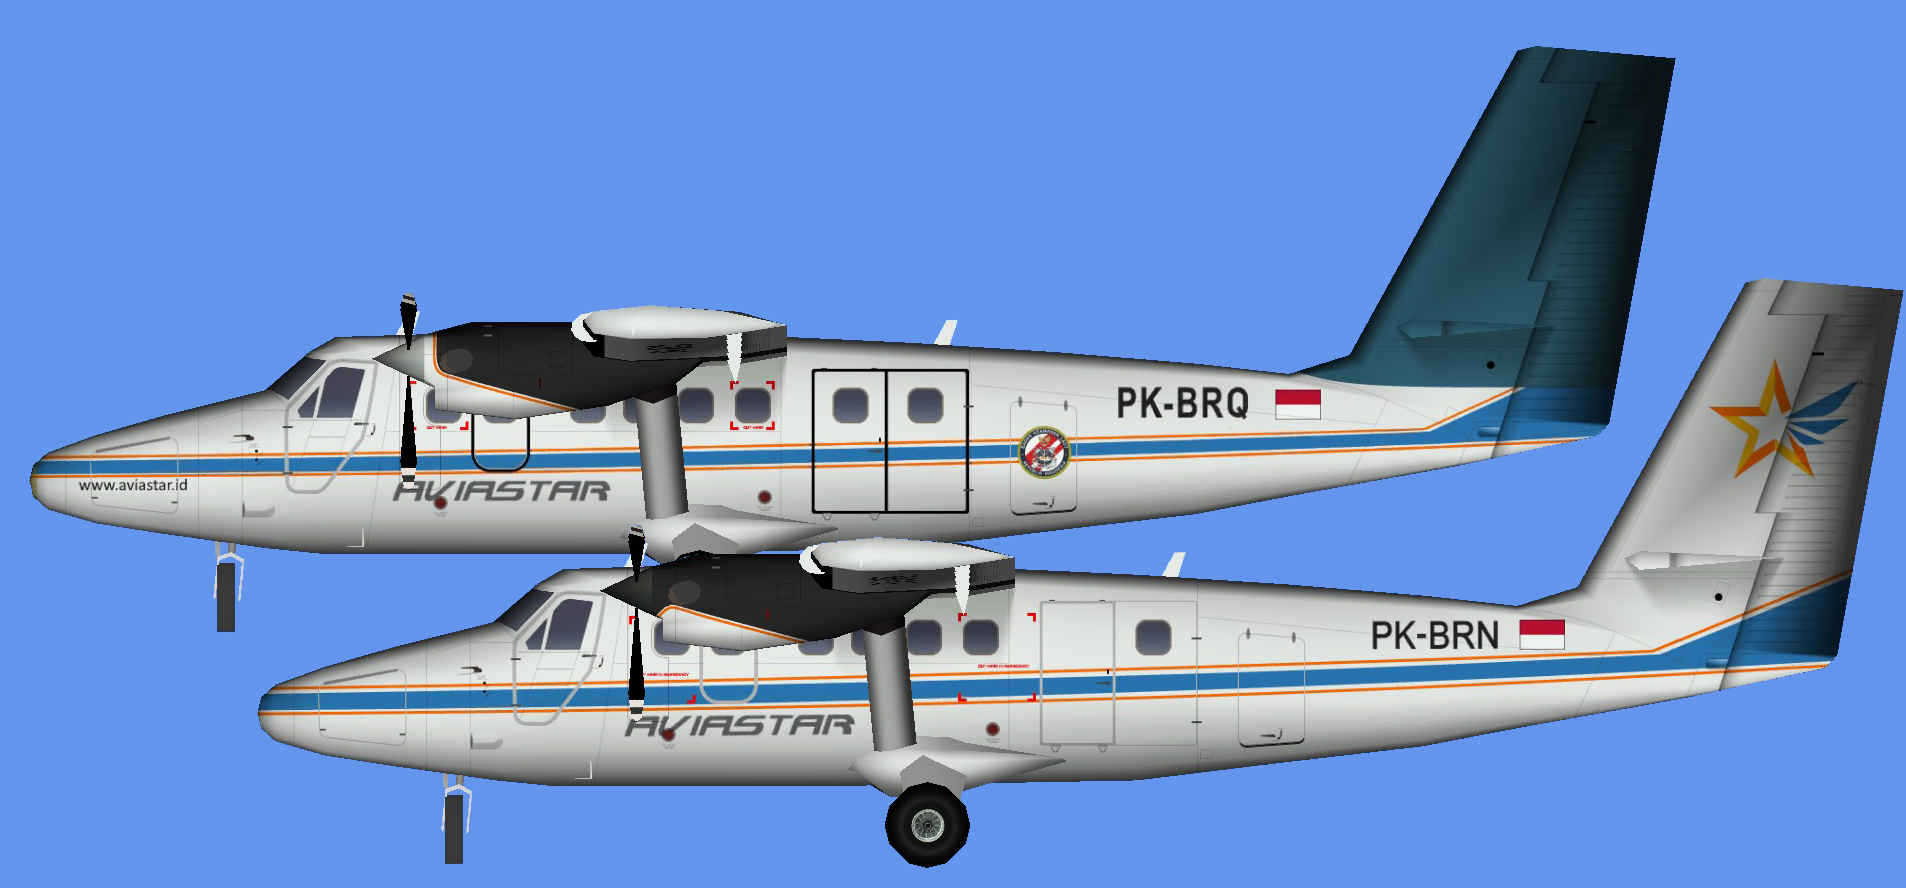 Aviastar Indonesia DHC-6 300